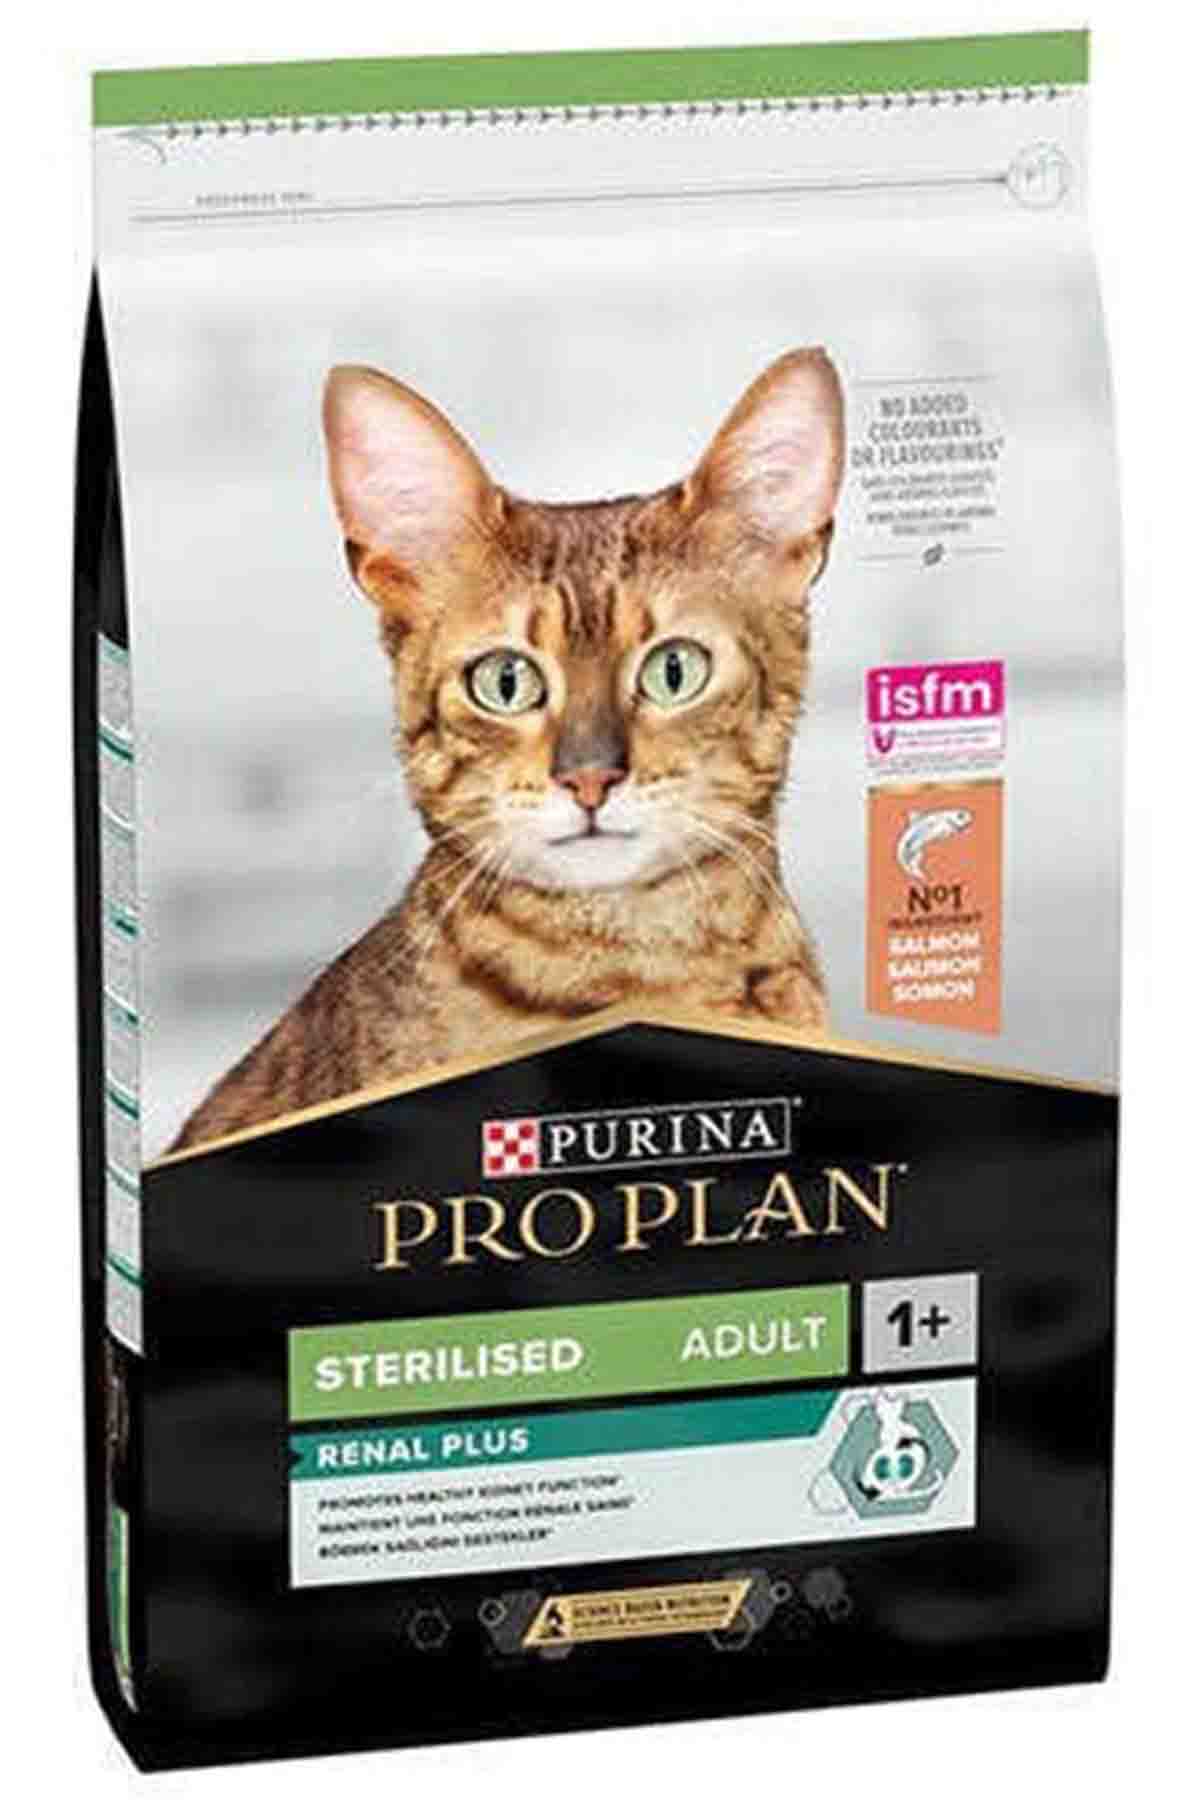 Pro Plan Somonlu Kısırlaştırılmış Kedi Maması 10kg